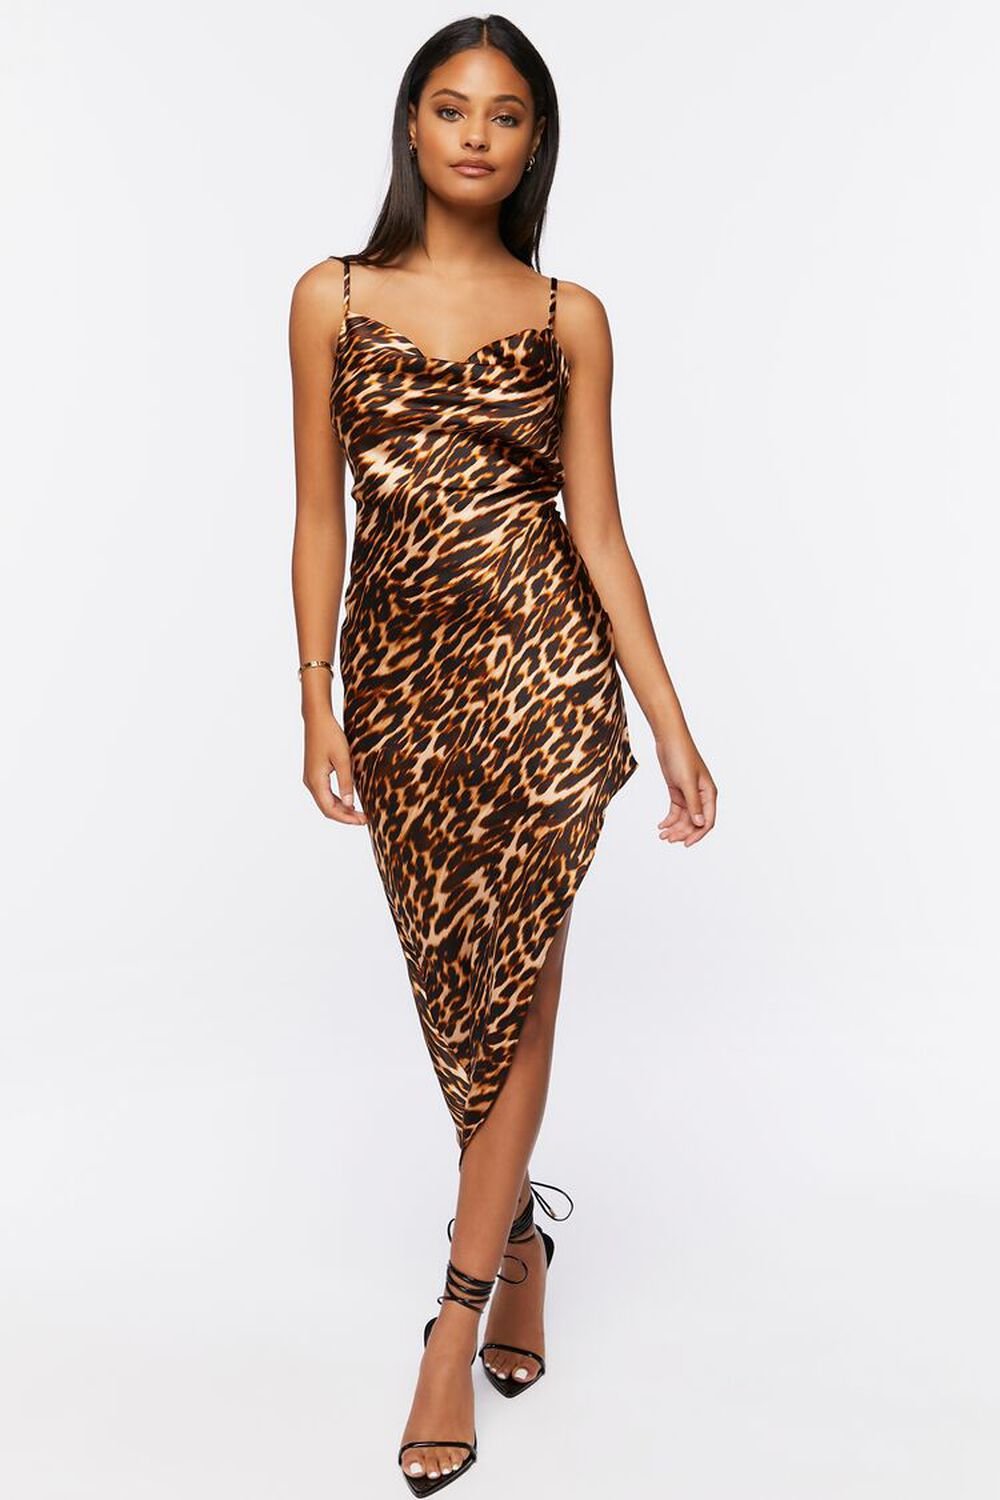 BROWN/MULTI Asymmetrical Leopard Print Dress, image 1